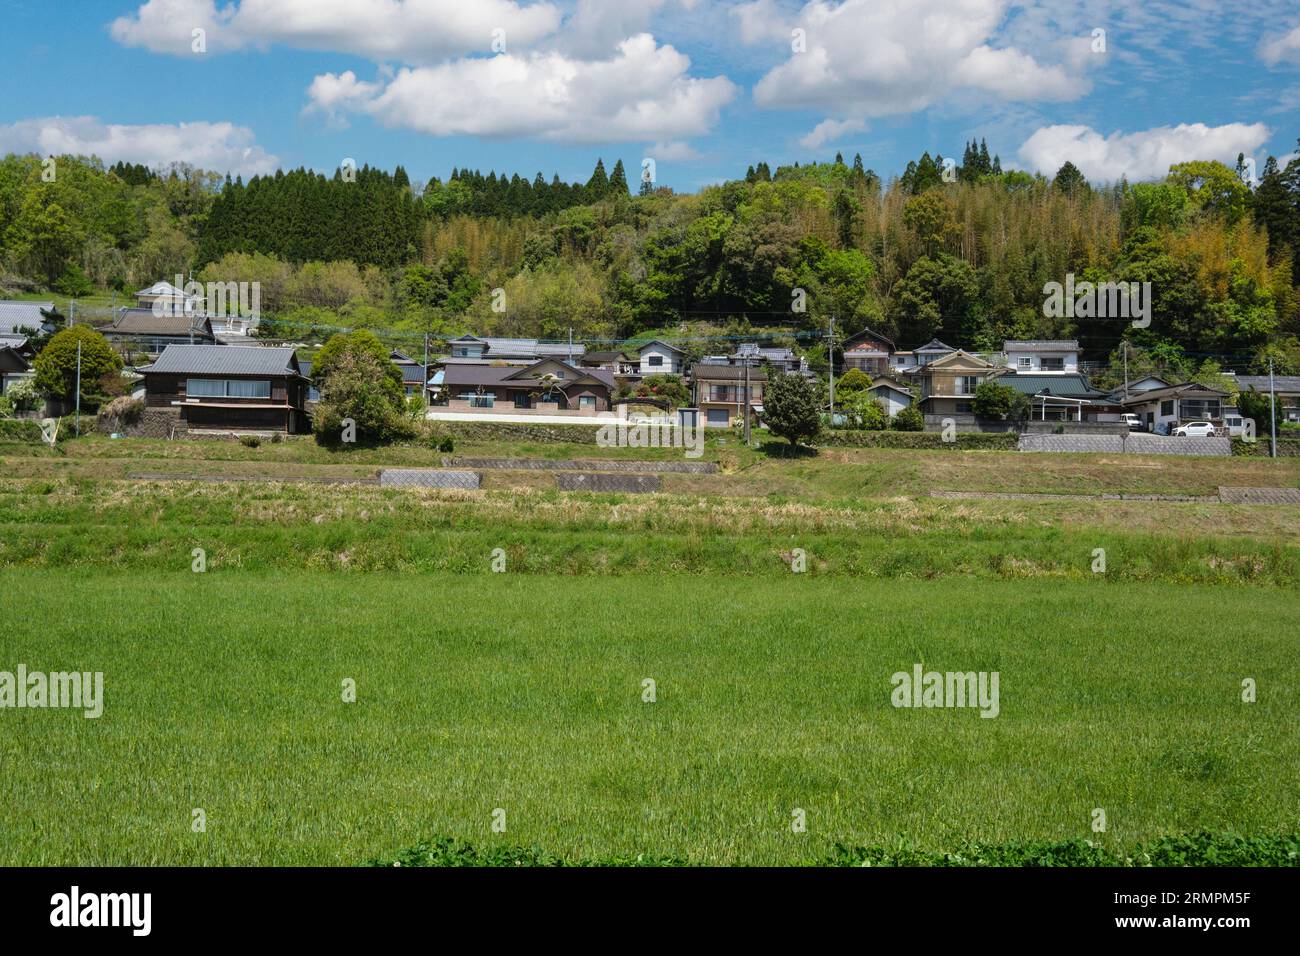 Japon, Kyushu, district de Bungo Ono. Champs et maisons agricoles irrigués. Préfecture d'Oita. Banque D'Images